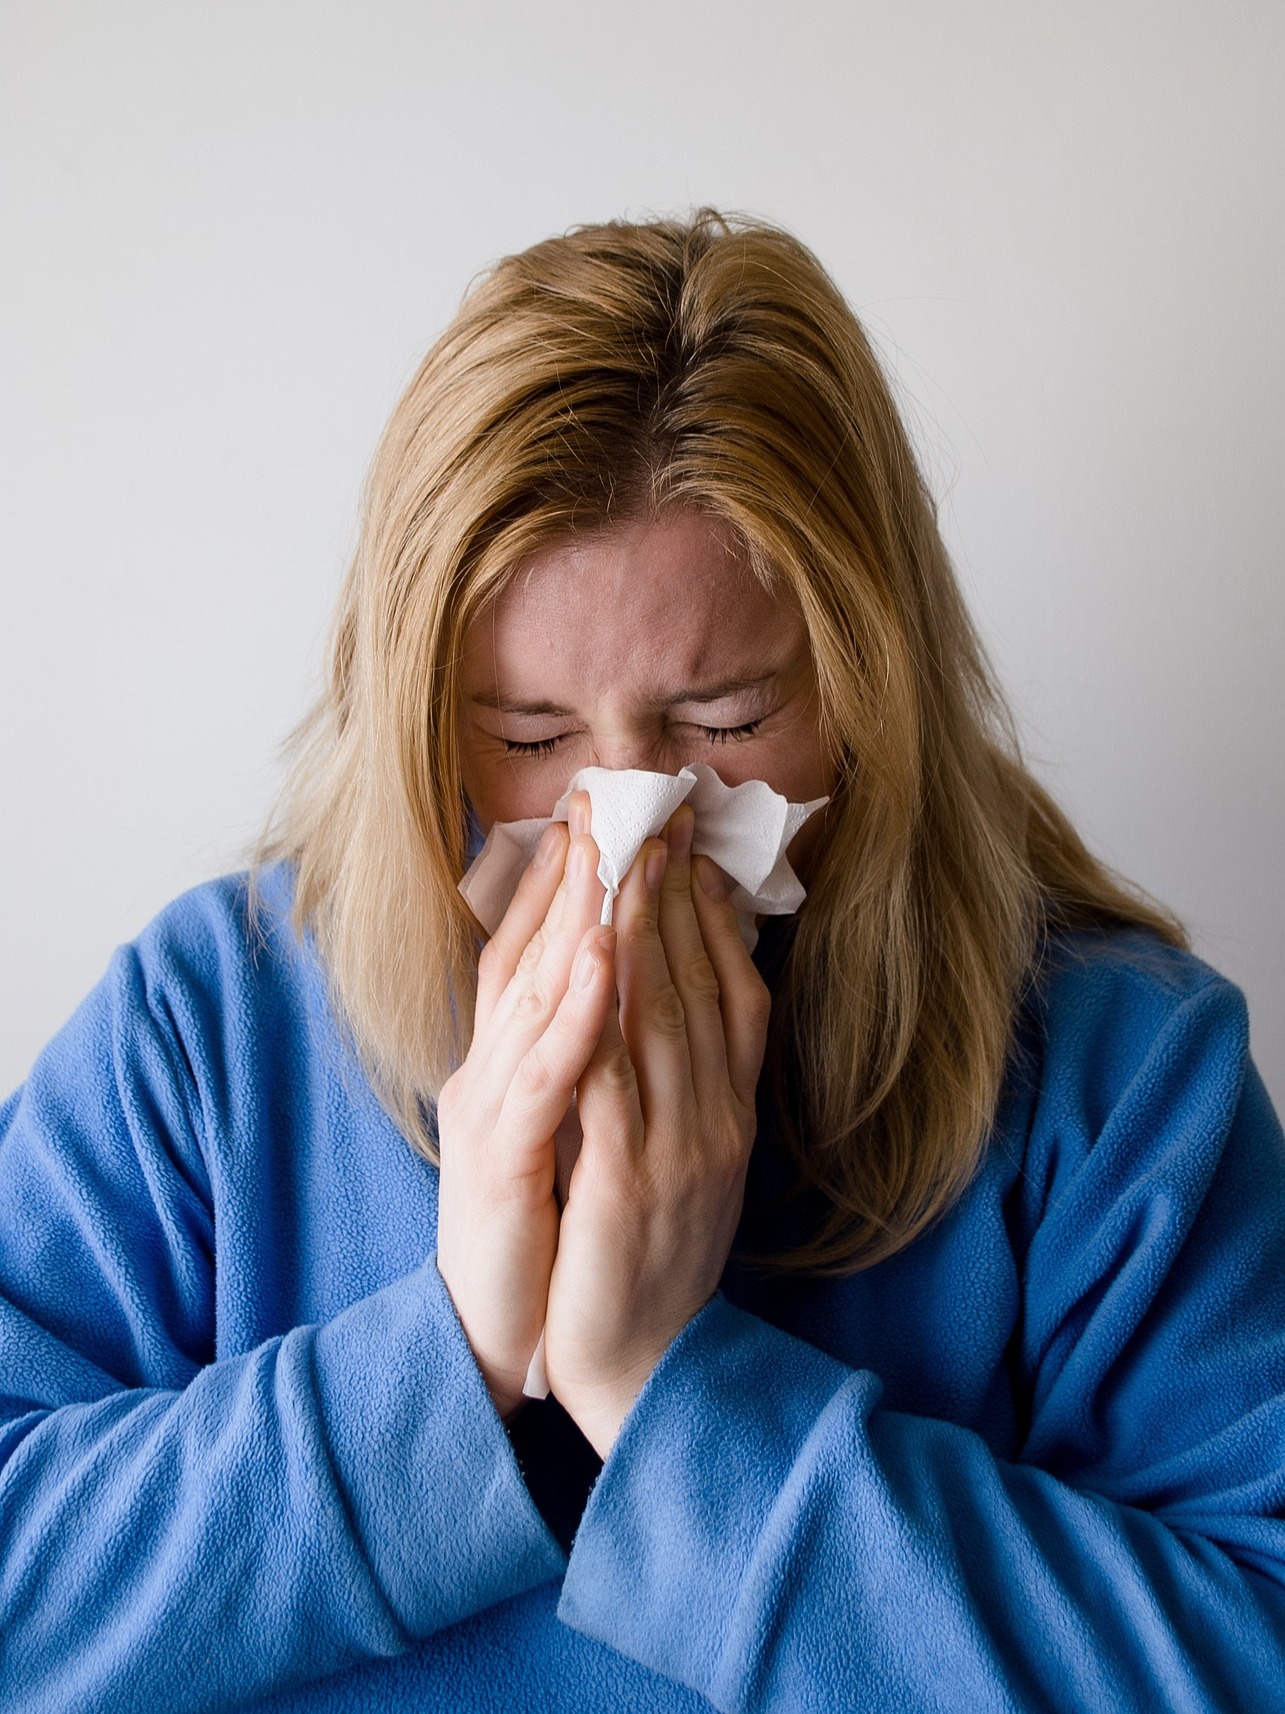 Tips To Treat Flu & Feel Better